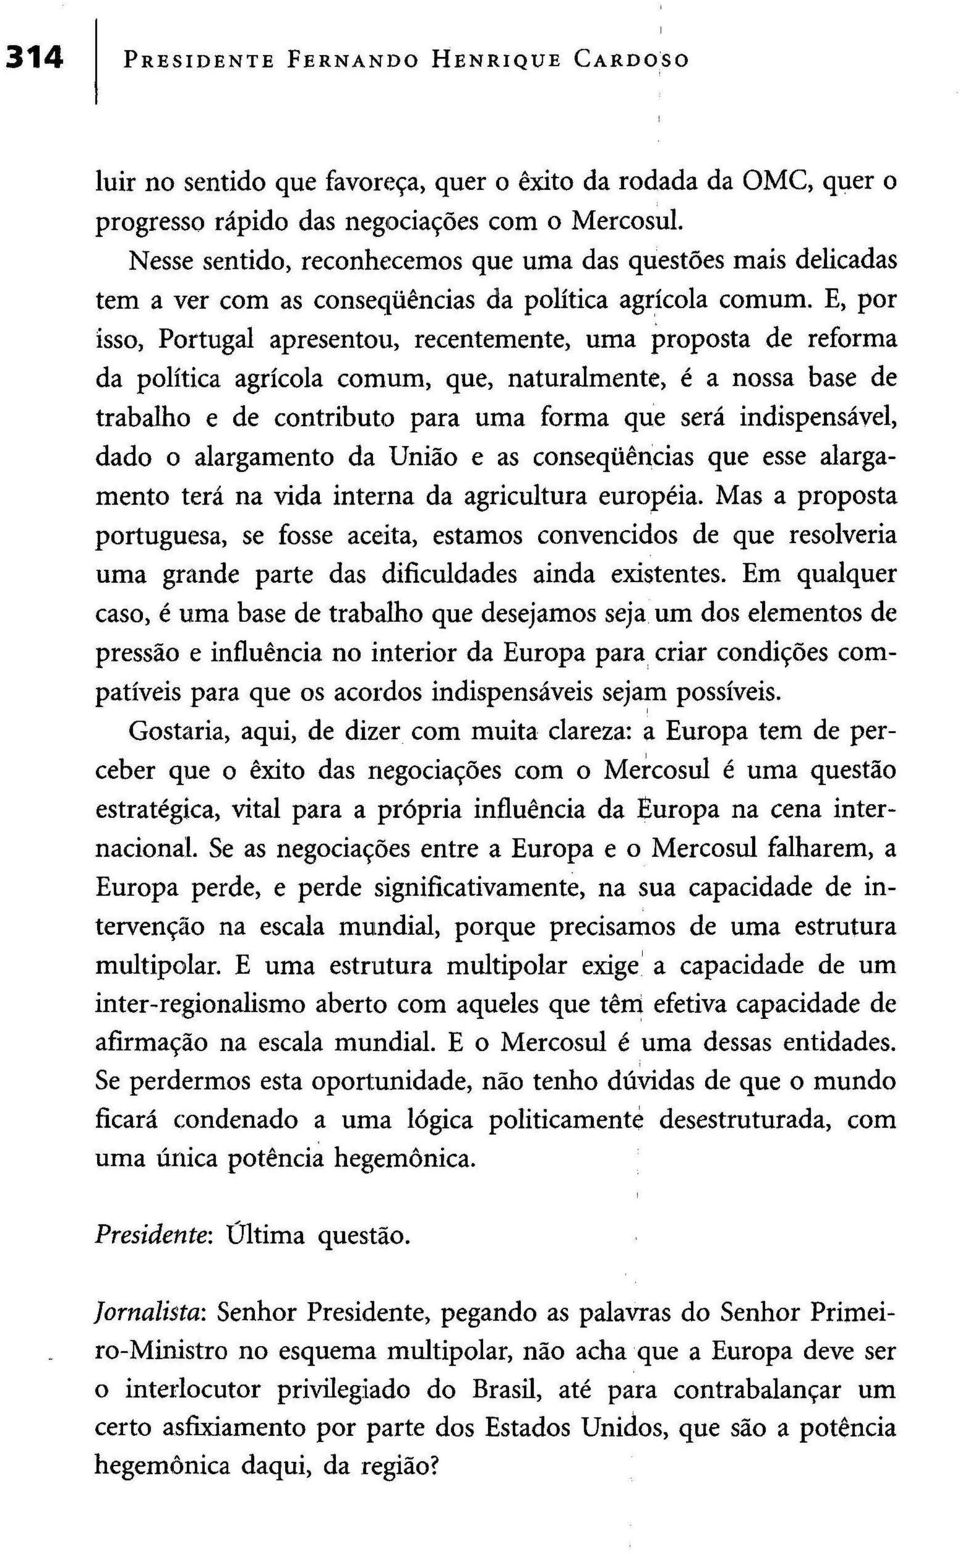 E, por isso, Portugal apresentou, recentemente, uma proposta de reforma da política agrícola comum, que, naturalmente, é a nossa base de trabalho e de contributo para uma forma que será